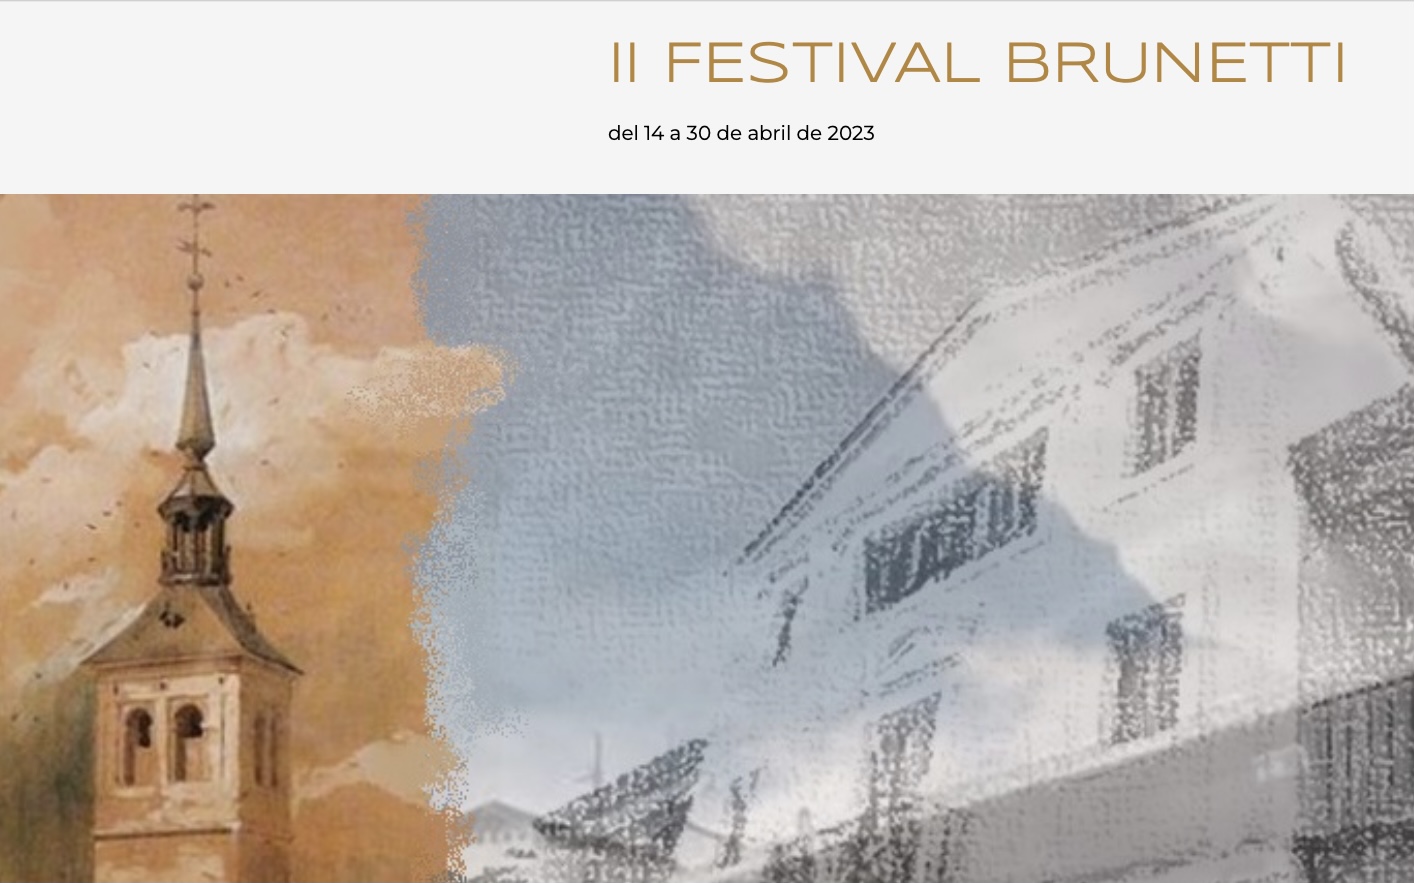 Imagen promocional del II Festival Brunetti de Colmenar de Oreja